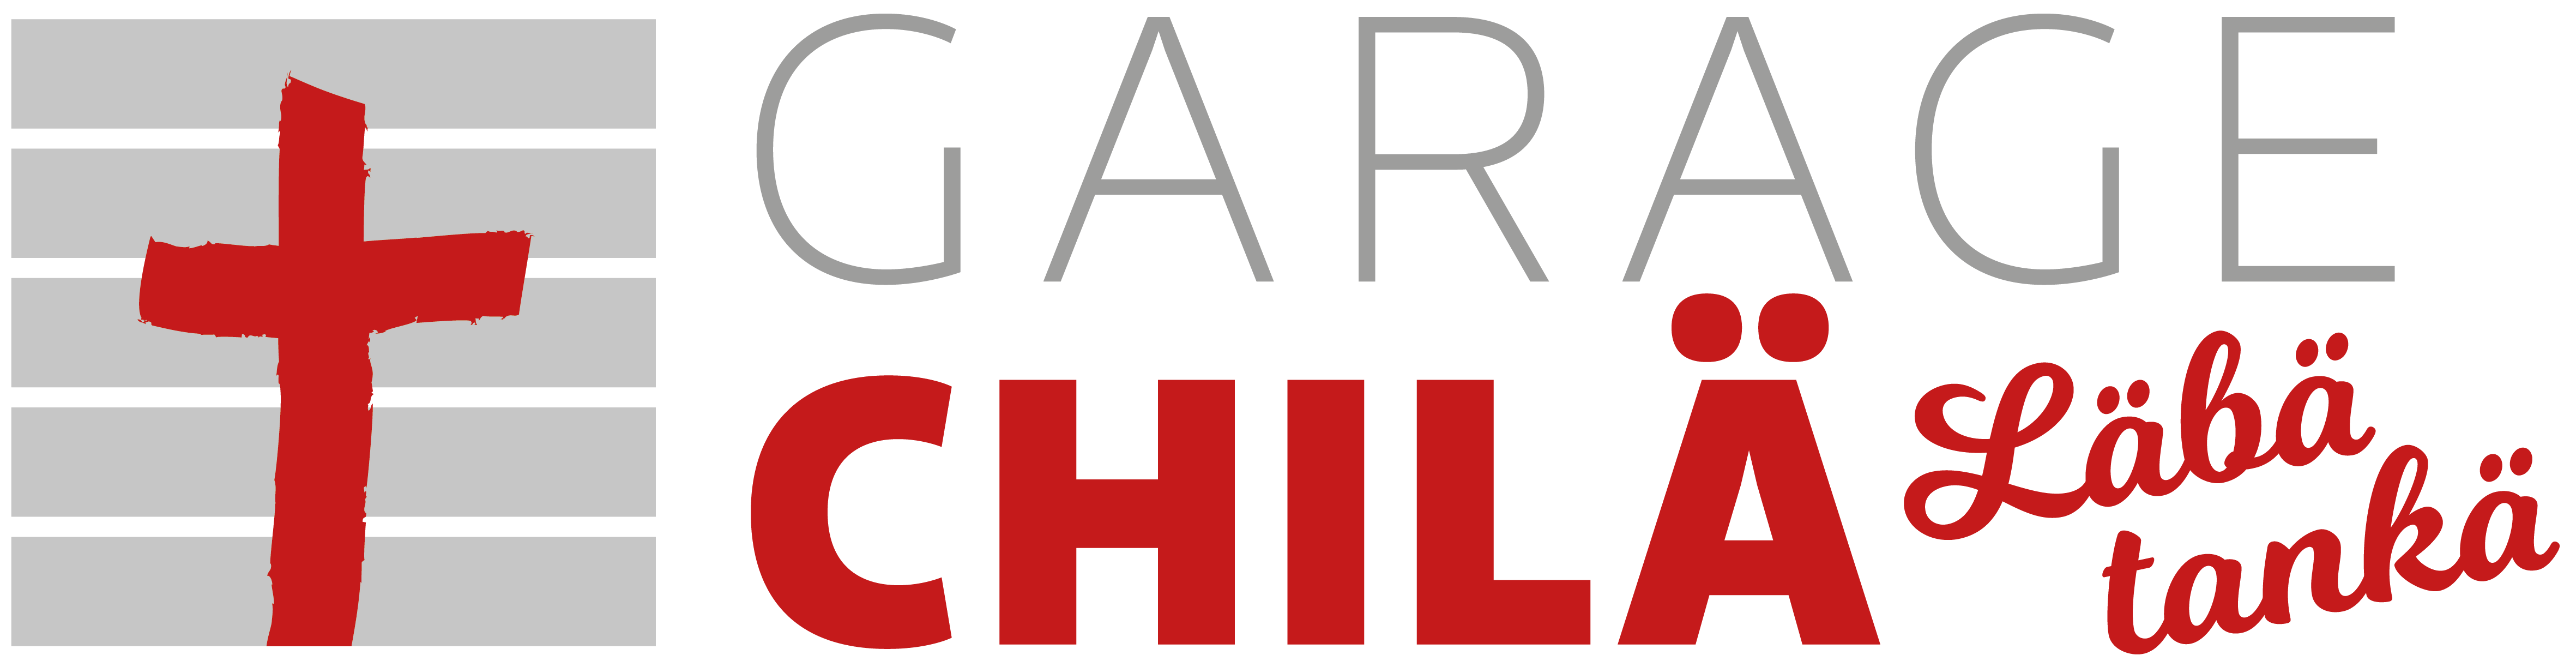 Garage Chilä logo